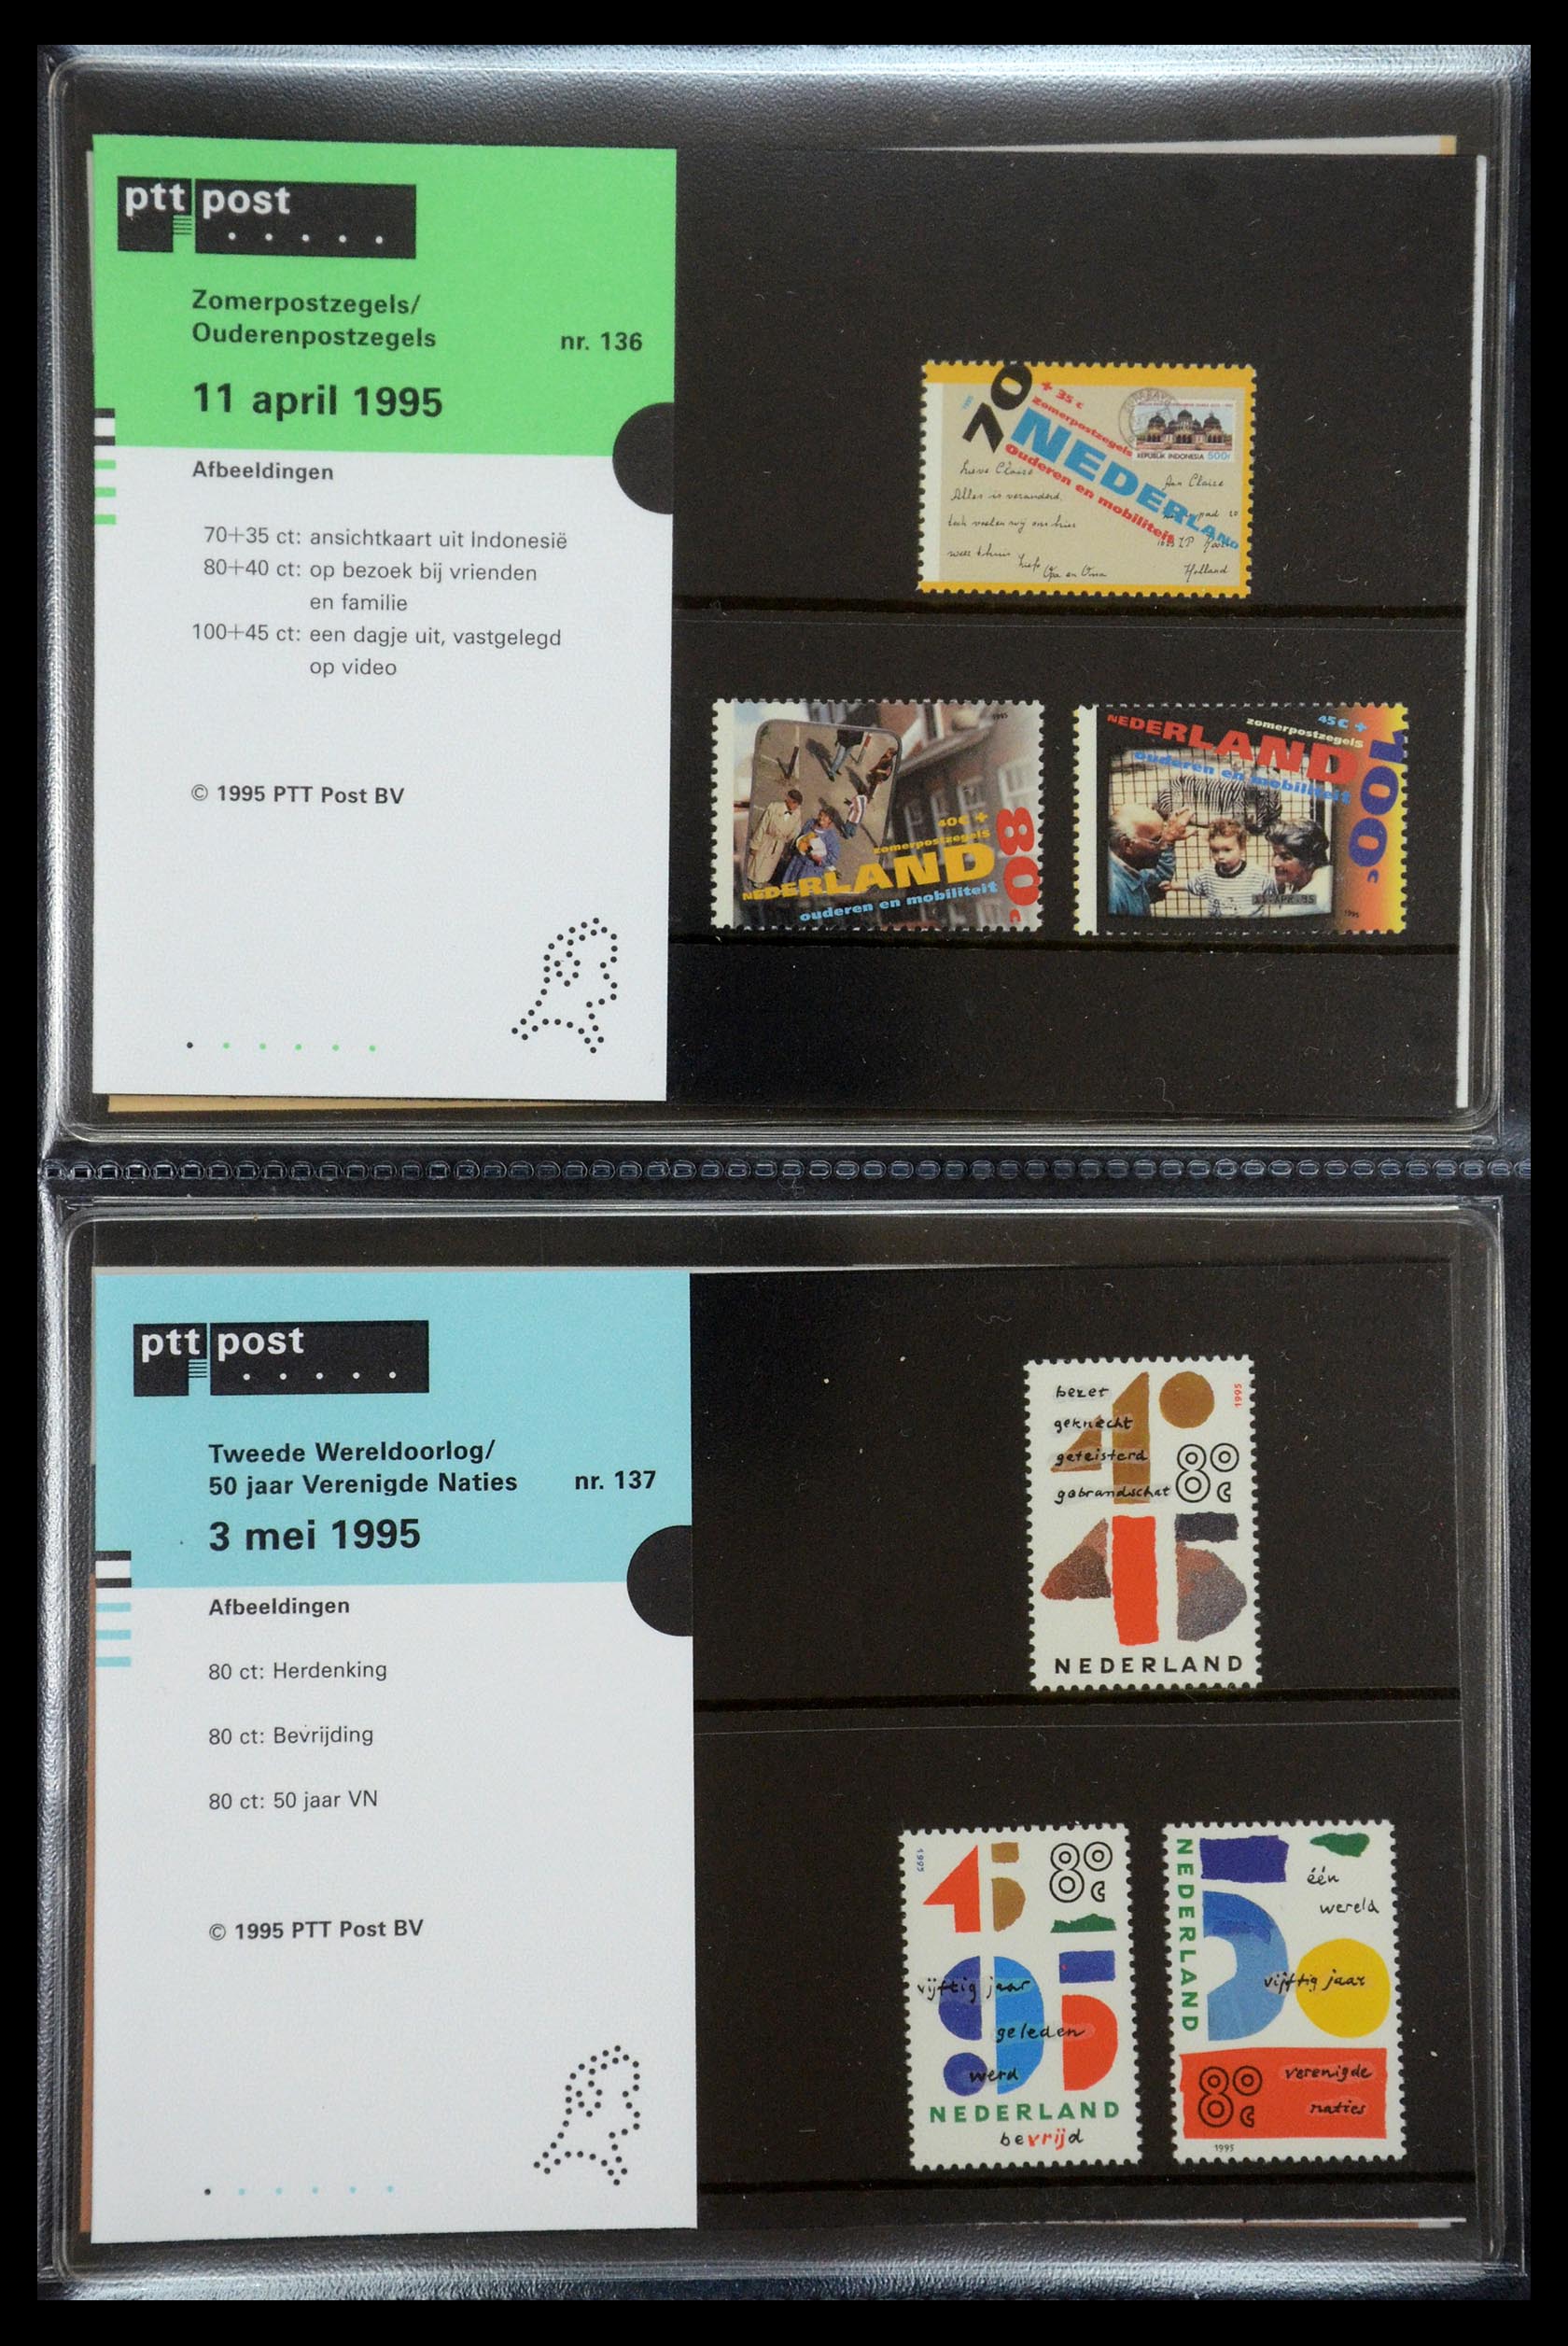 35187 070 - Stamp Collection 35187 Netherlands PTT presentation packs 1982-2019!